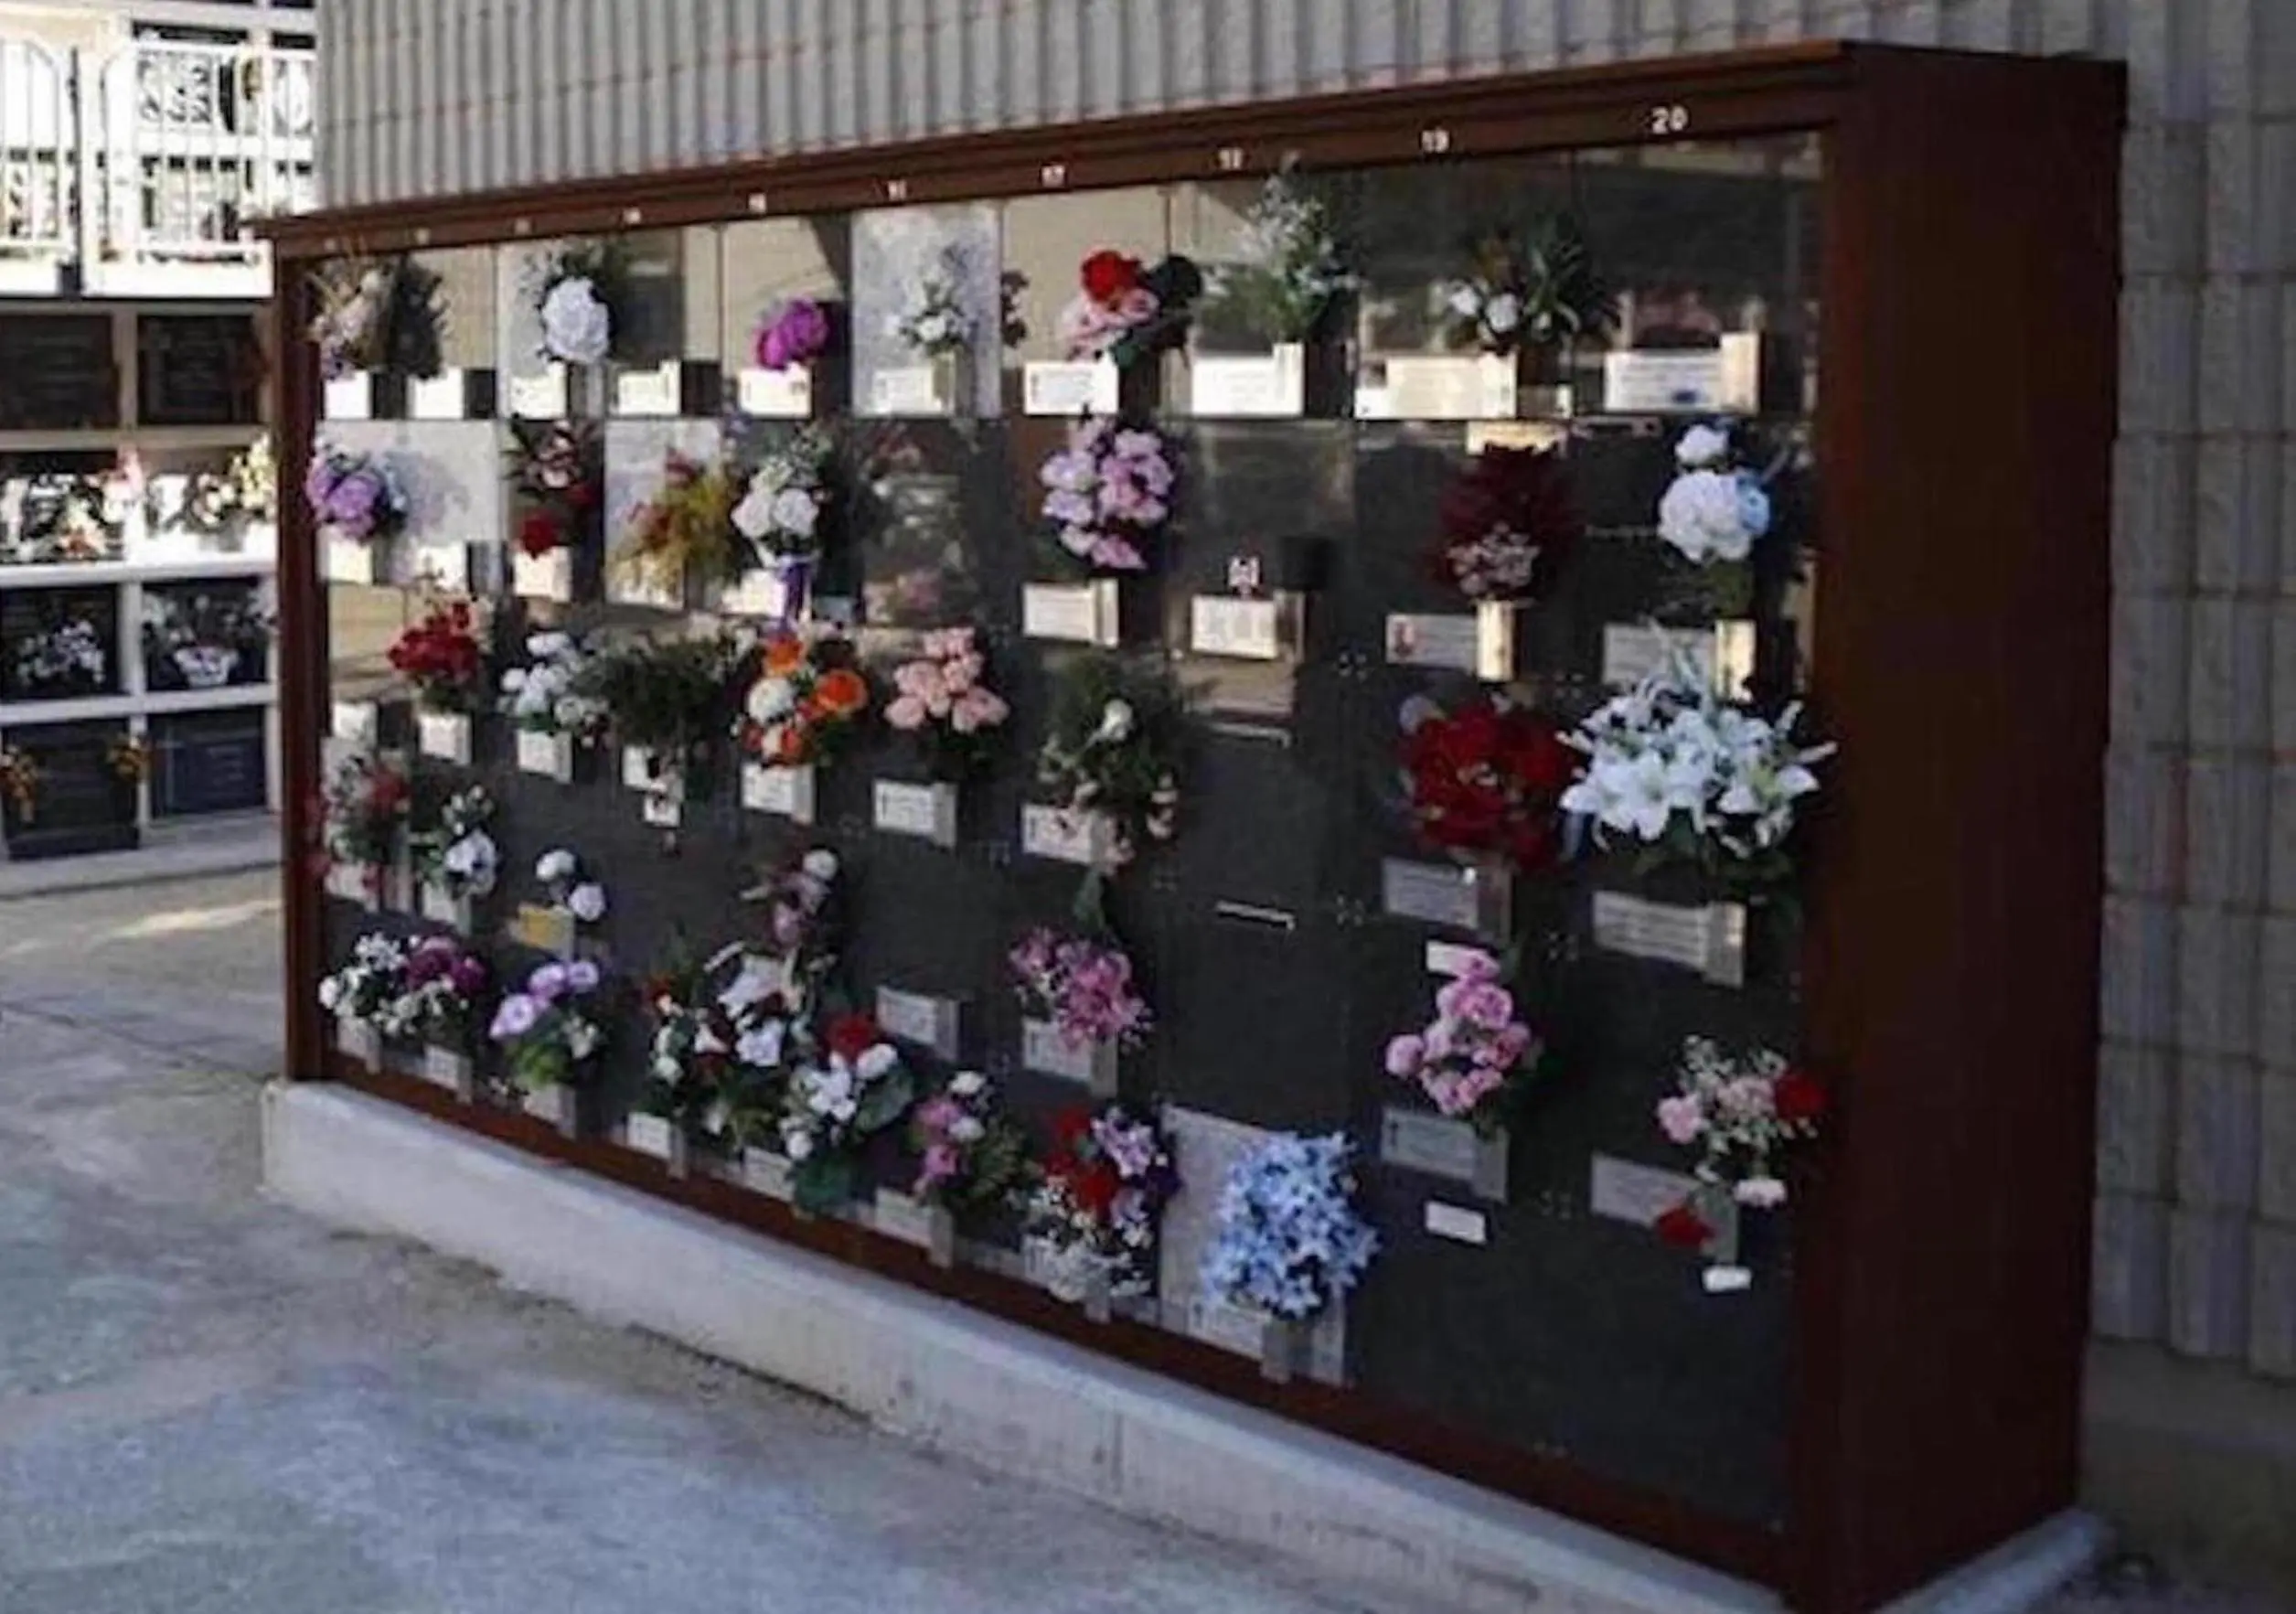 Construirán 1.620 nuevos columbarios en el cementerio de Torrero a partir de noviembre